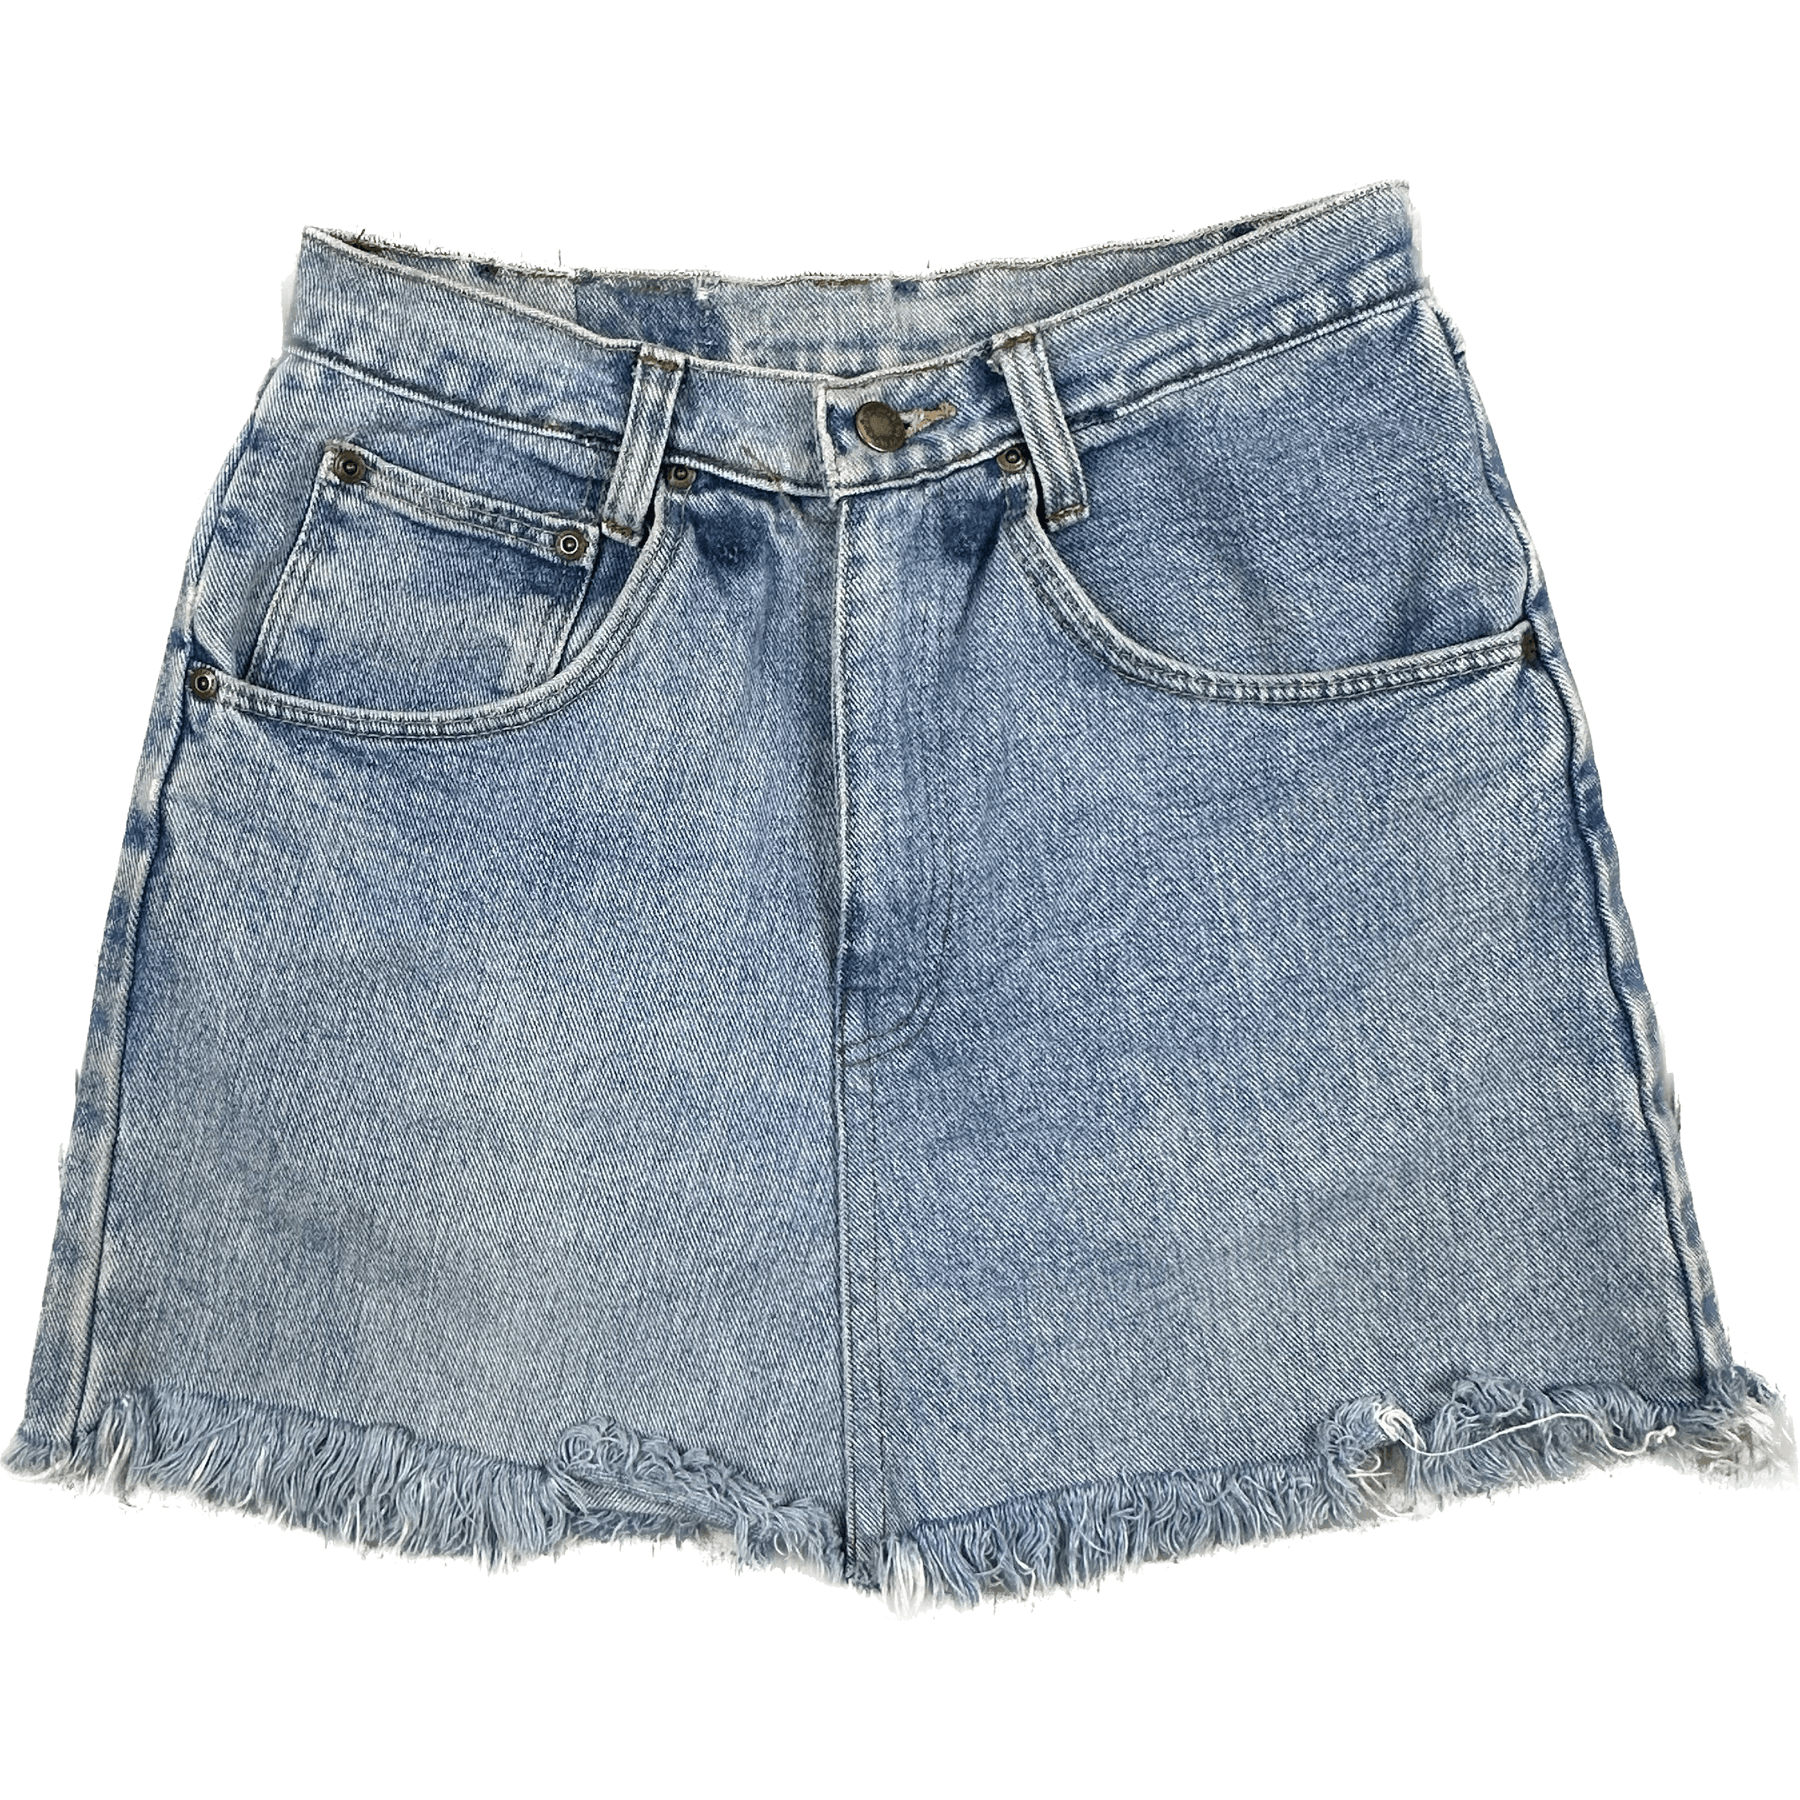 Wrangler Light Wash Denim Jeans Skirt -Size 9 – Jean Pool